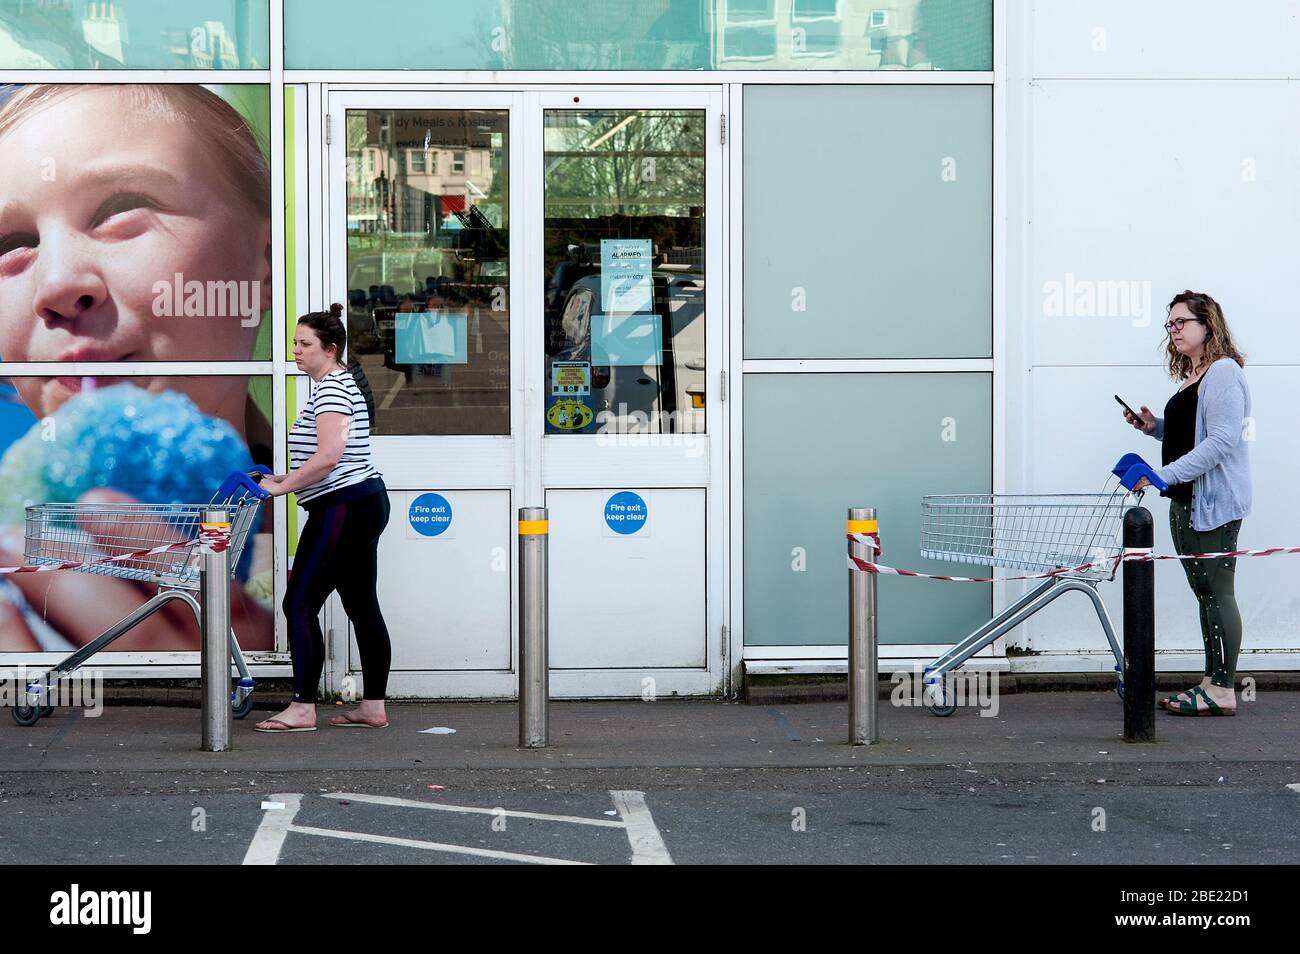 Brighton e Hove, Inghilterra, aprile 2020. Sulla scia della pandemia di coronavirus due donne mantengono una distanza sociale mentre fanno shopping in un supermercato. Foto Stock